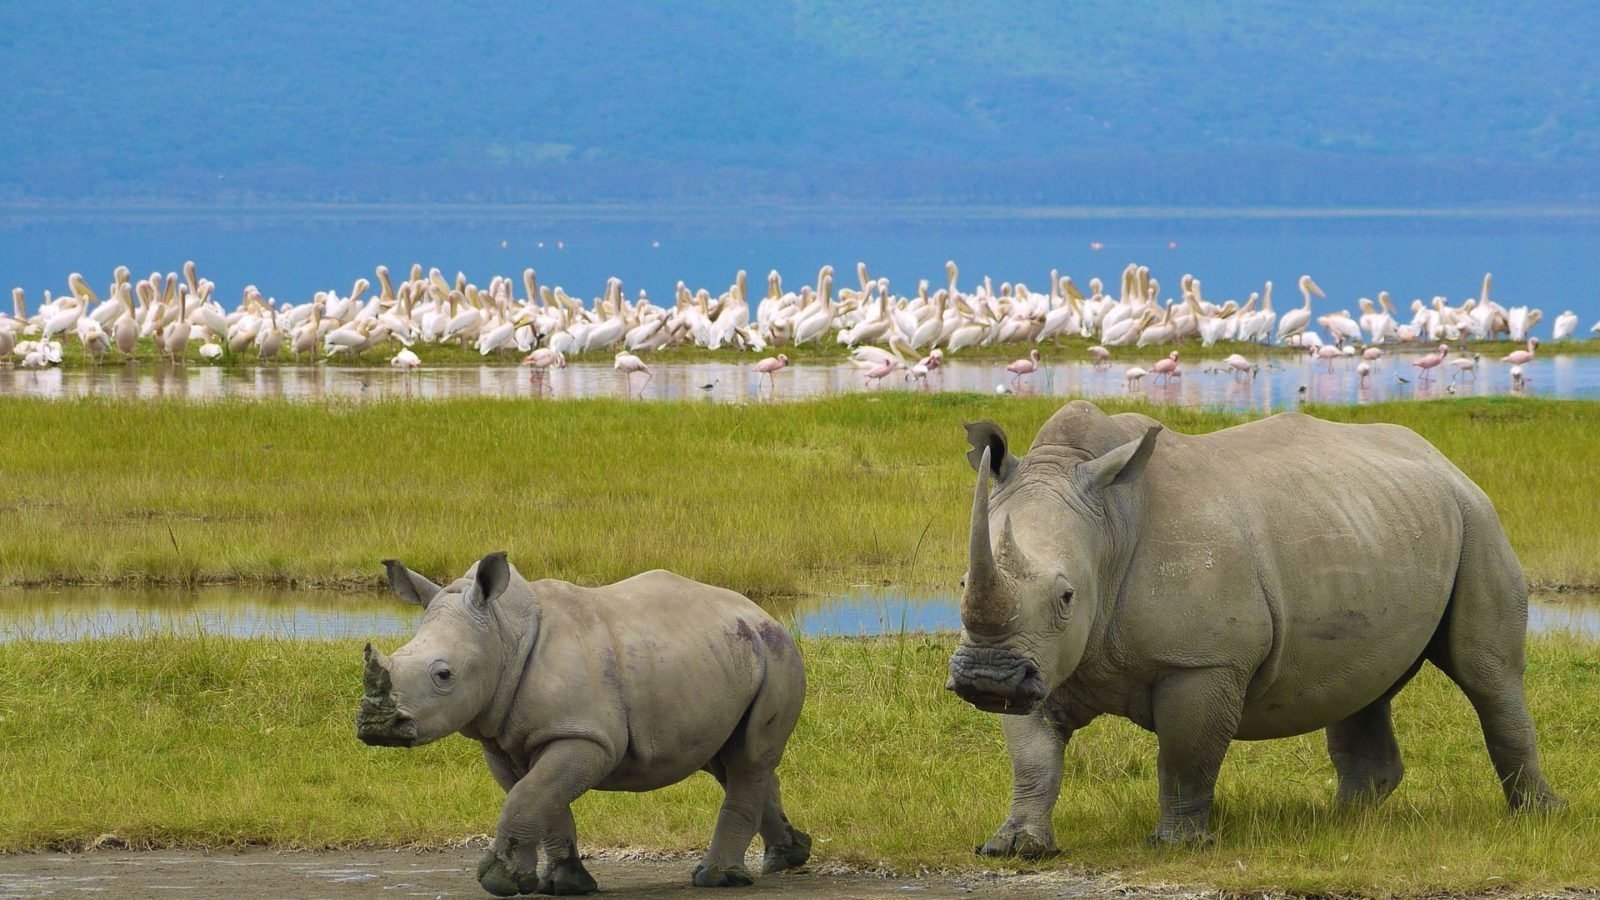 Kenya safari - Lake Nakuru National Park 